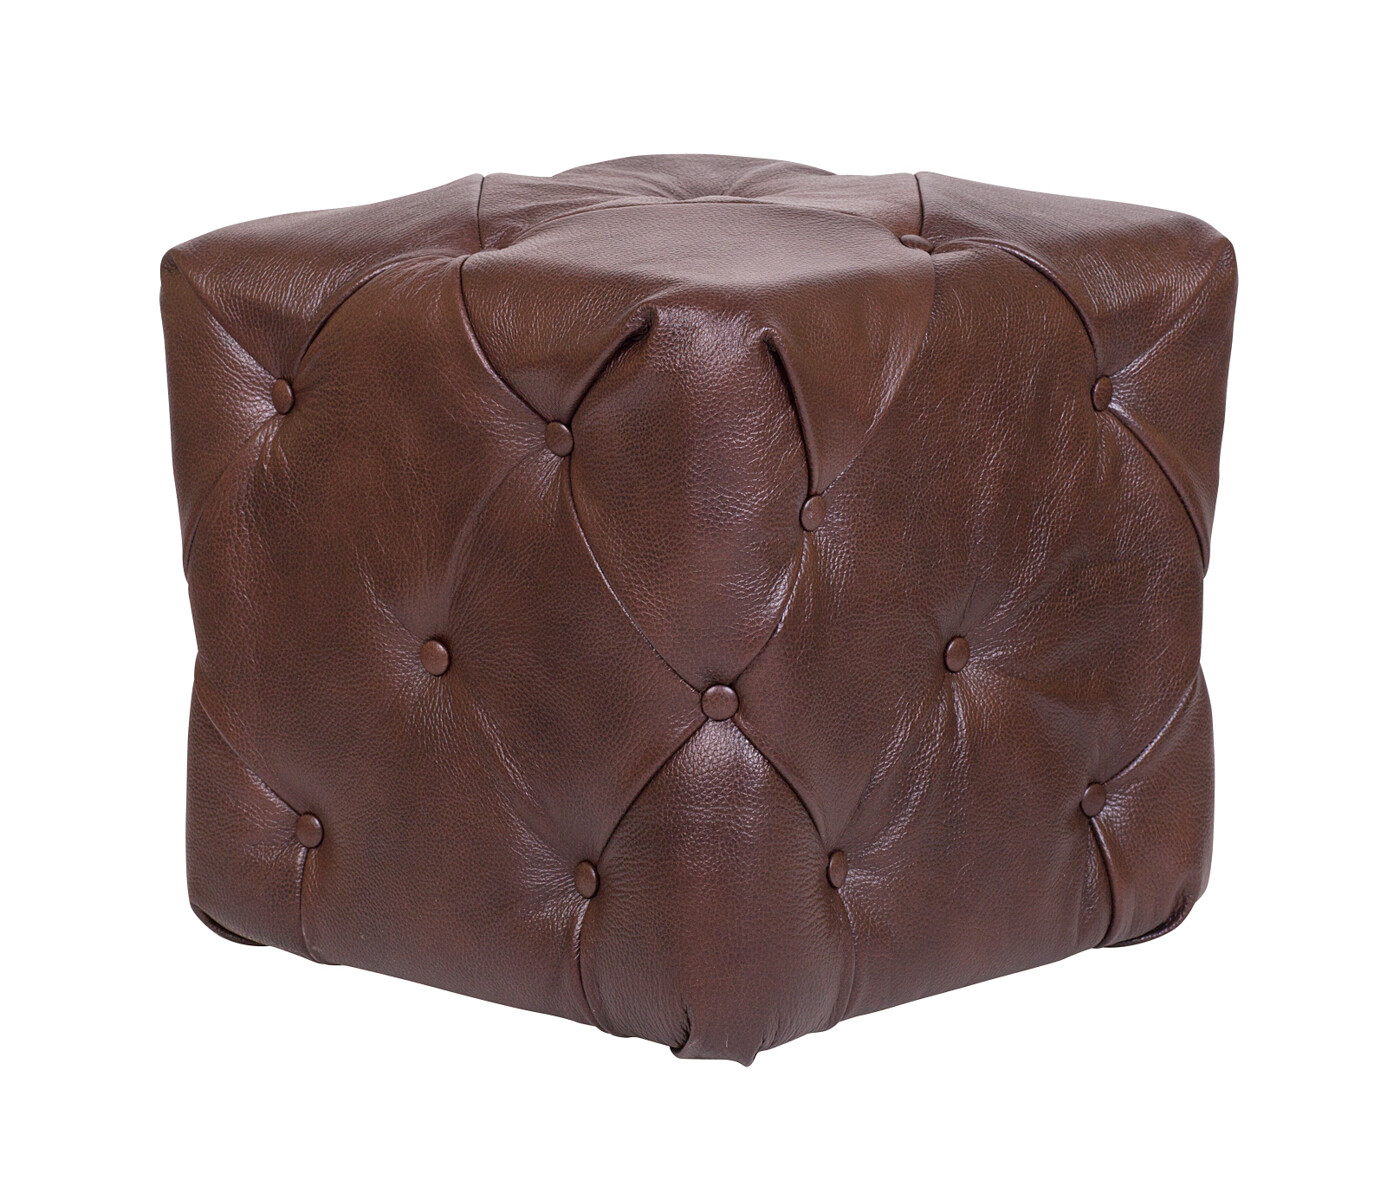 Пуфик мягкий коричневый Amrit brown leather